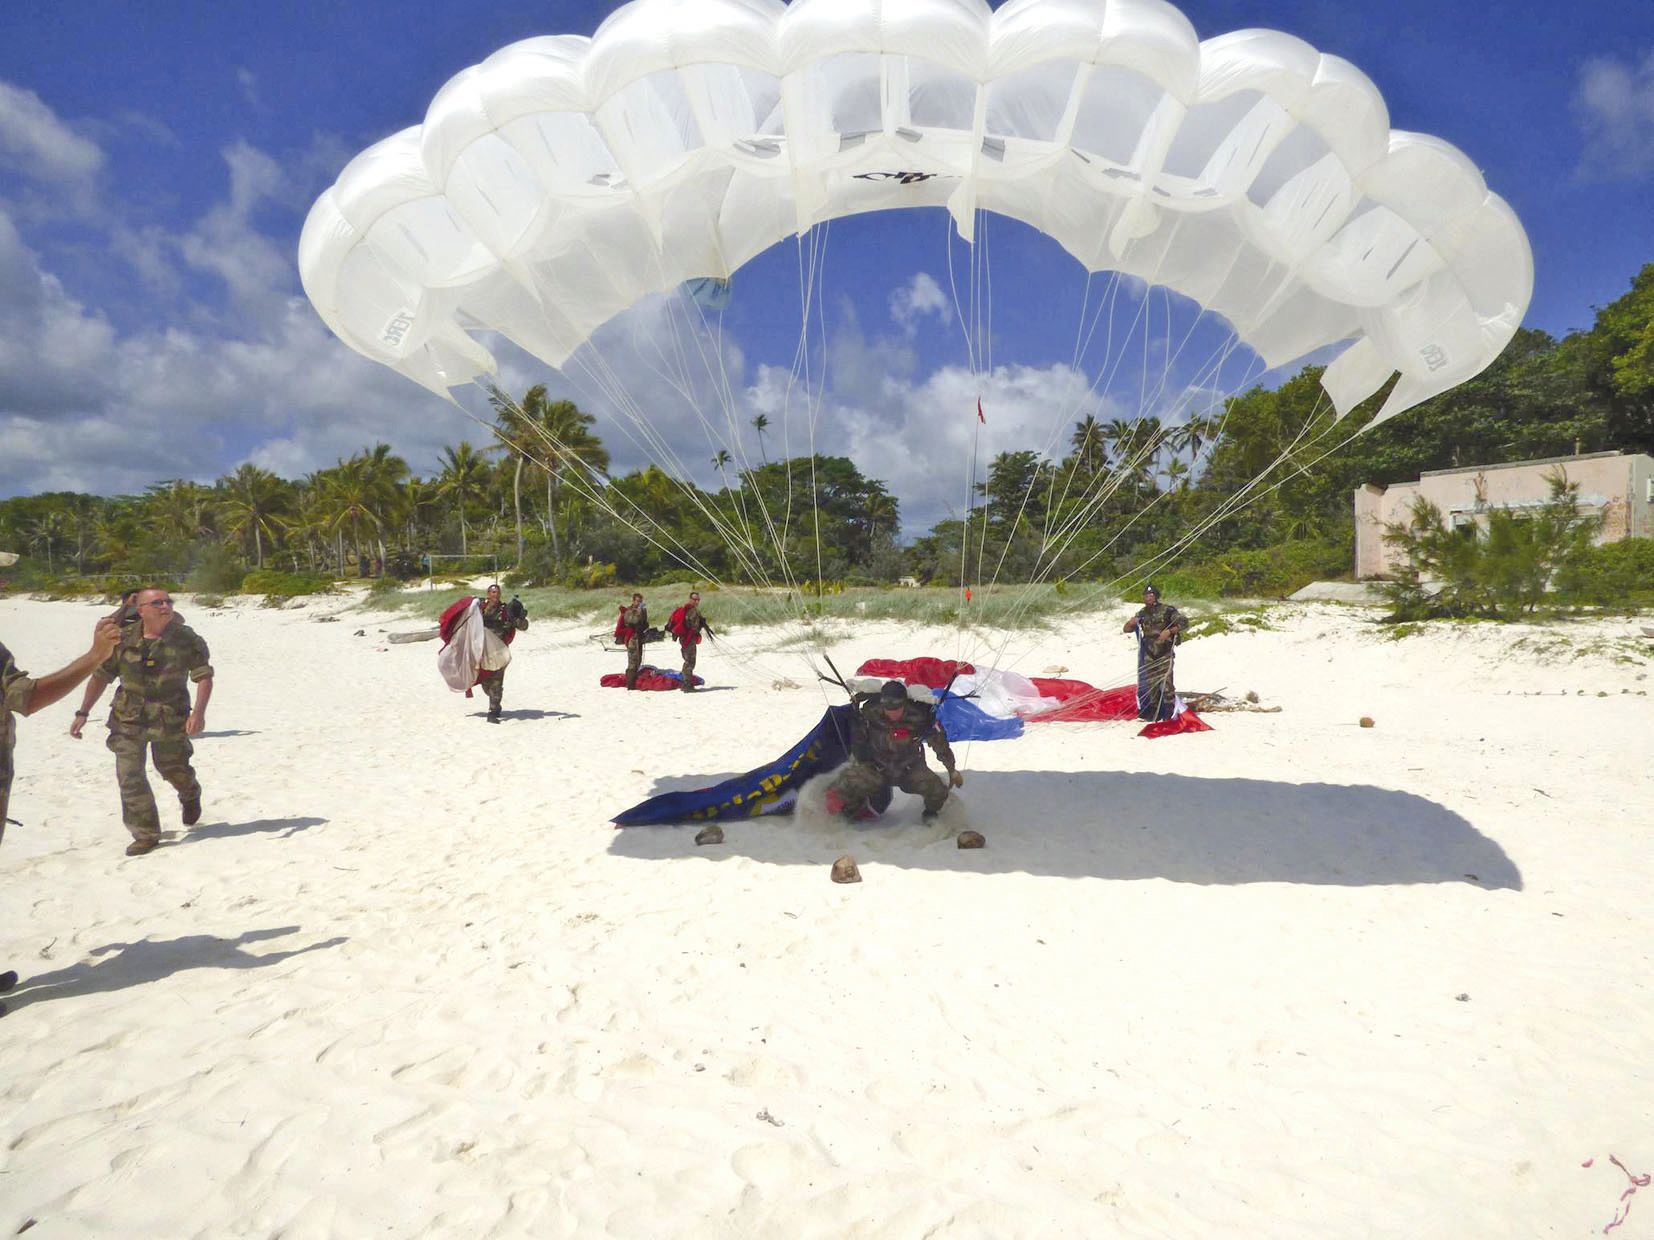 Le puma des Fanc, stationné sur la plage de Chateaubriand, a décollé avec, à son bord, 5 militaires qui ont fait des sauts en parachute sous les yeux du public.